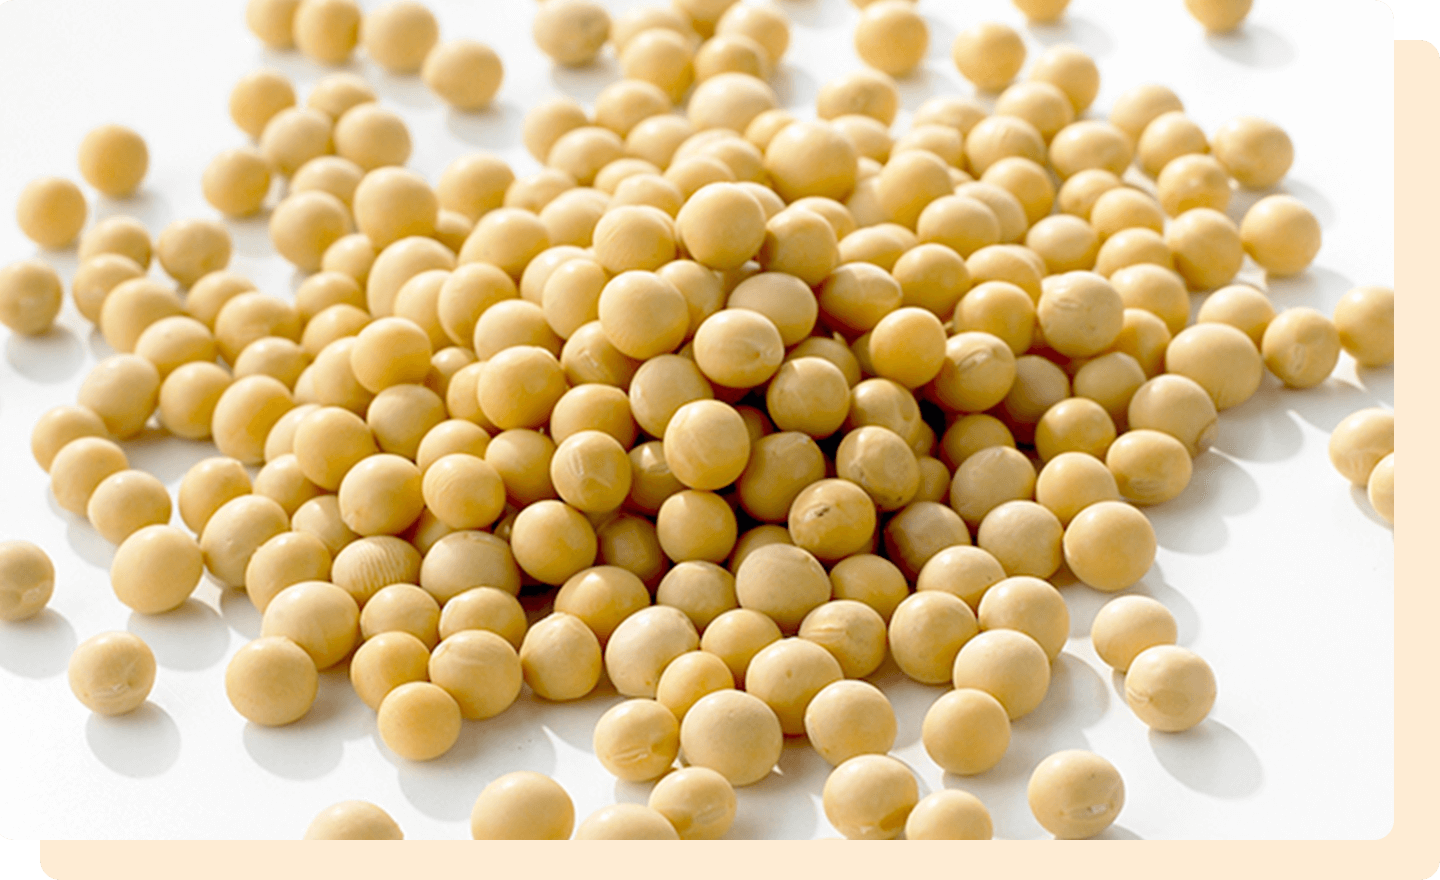 必須アミノ酸が豊富な豆類のたんぱく質。